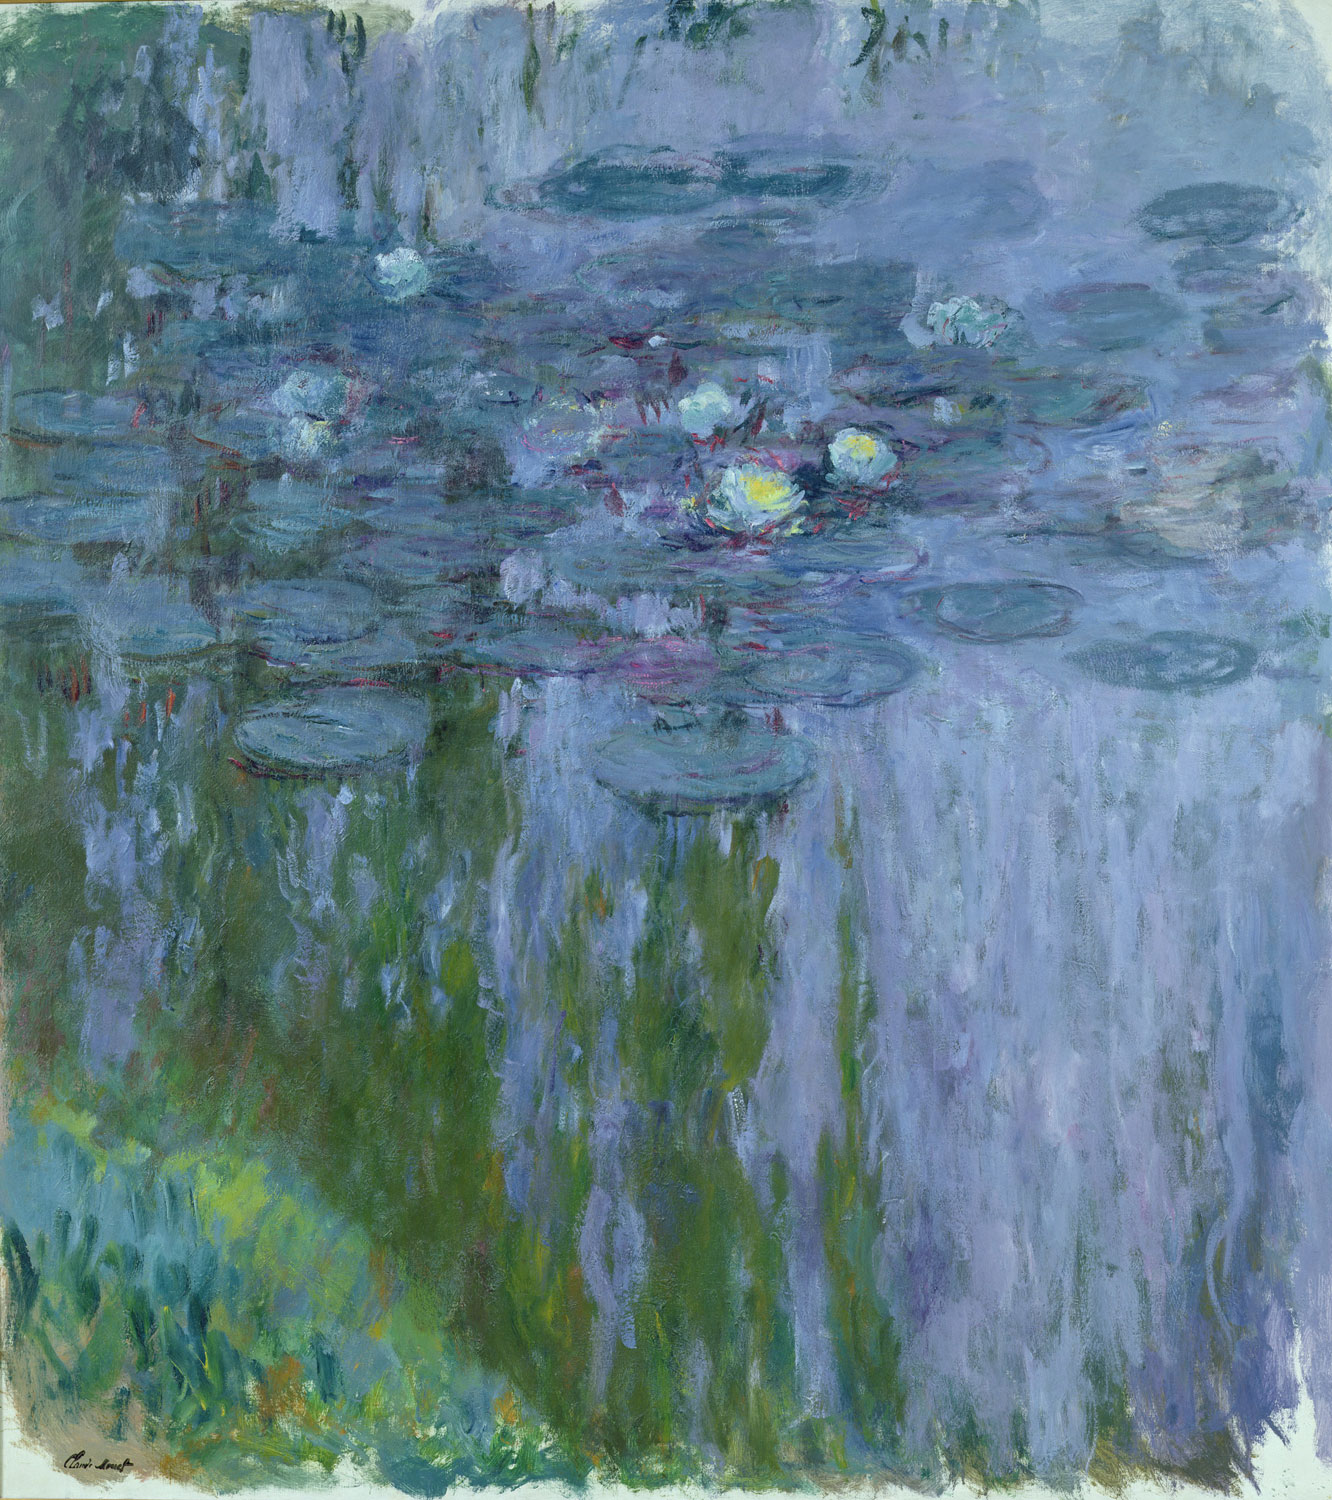 Claude Monet, Ninfee (1916-1919 circa; olio su tela, 200x180 cm; Parigi, Musée Marmottan Monet, lascito Michel Monet, 1966 Inv. 5119) © Musée Marmottan Monet, Académie des beaux-arts, Paris
